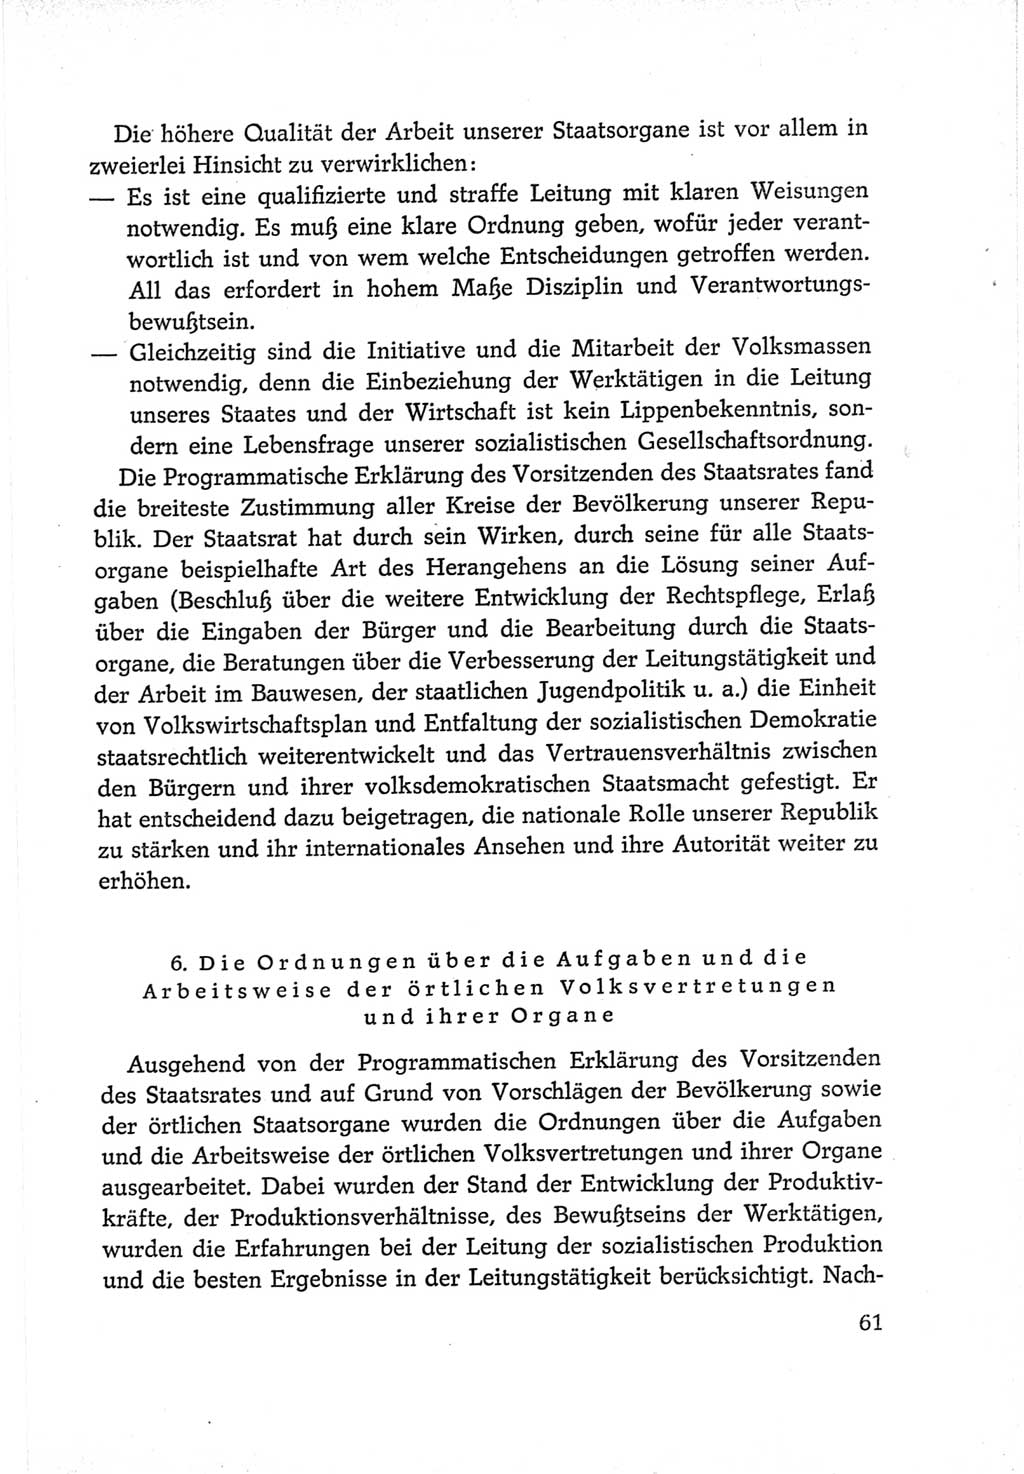 Protokoll der Verhandlungen des Ⅵ. Parteitages der Sozialistischen Einheitspartei Deutschlands (SED) [Deutsche Demokratische Republik (DDR)] 1963, Band Ⅳ, Seite 61 (Prot. Verh. Ⅵ. PT SED DDR 1963, Bd. Ⅳ, S. 61)